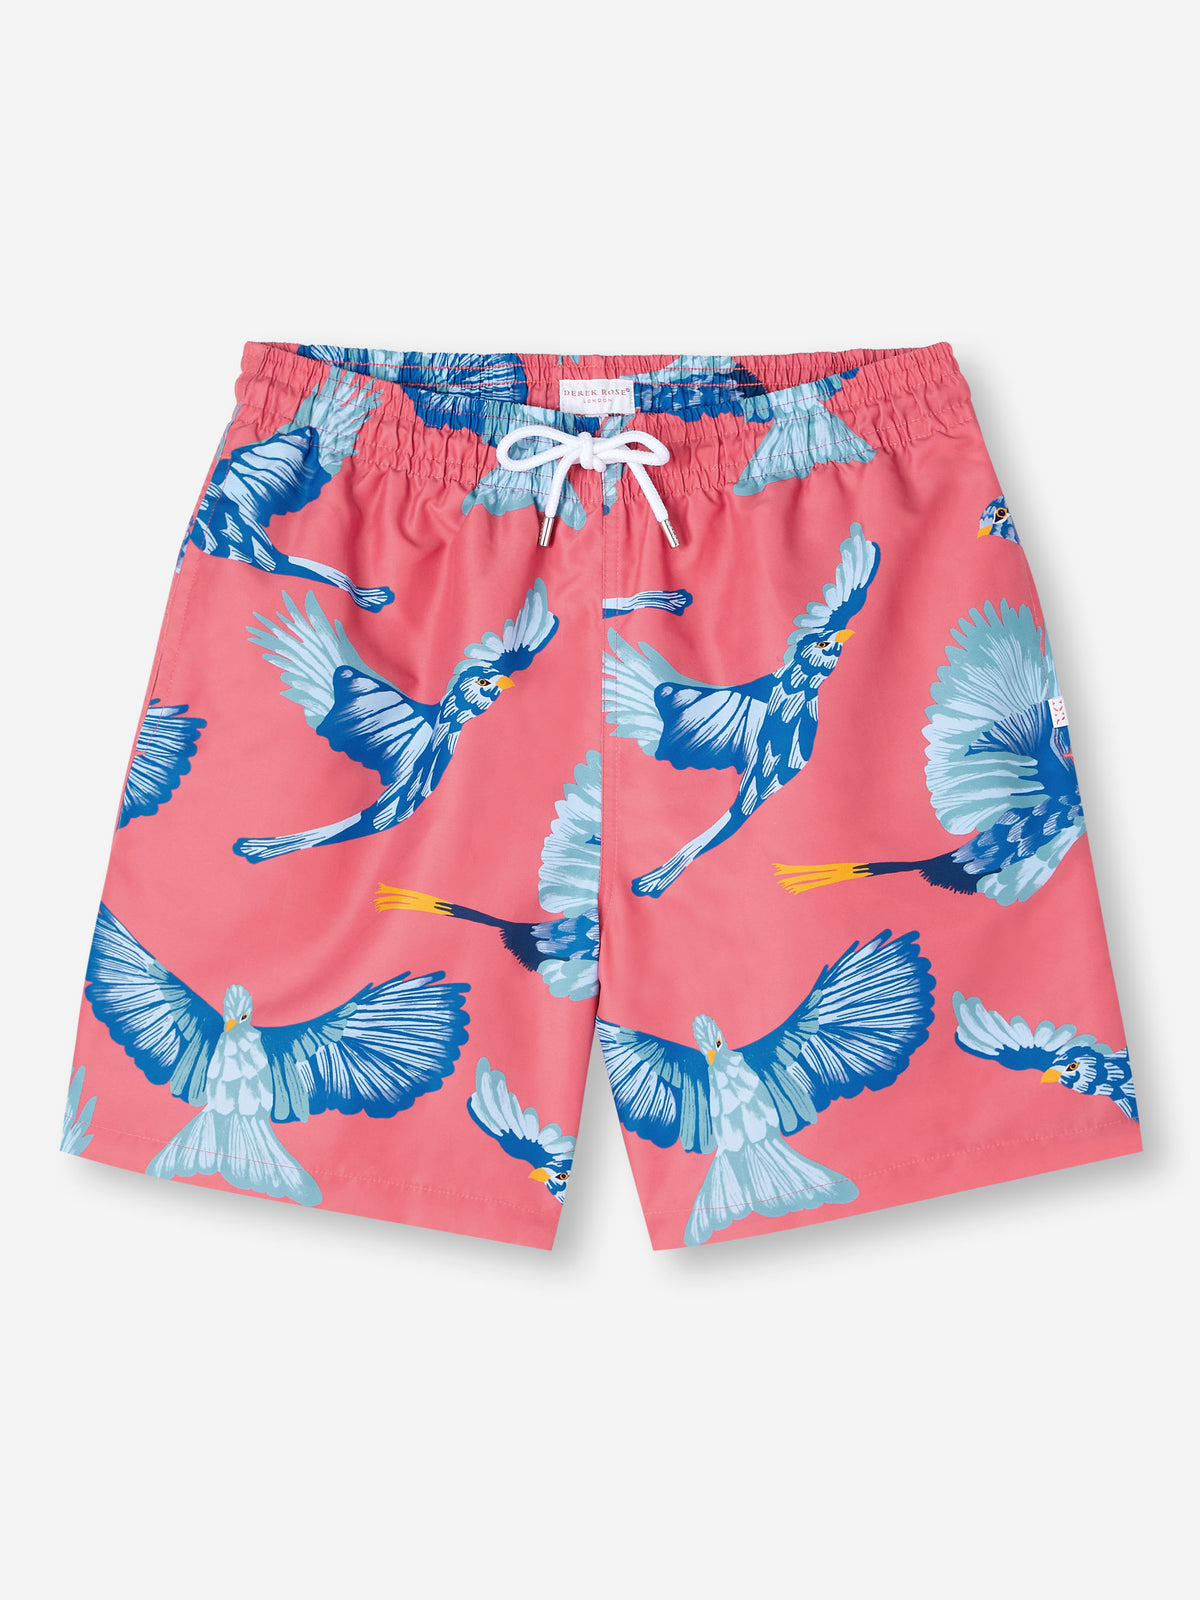 Men's Swim Shorts Maui 54 Multi